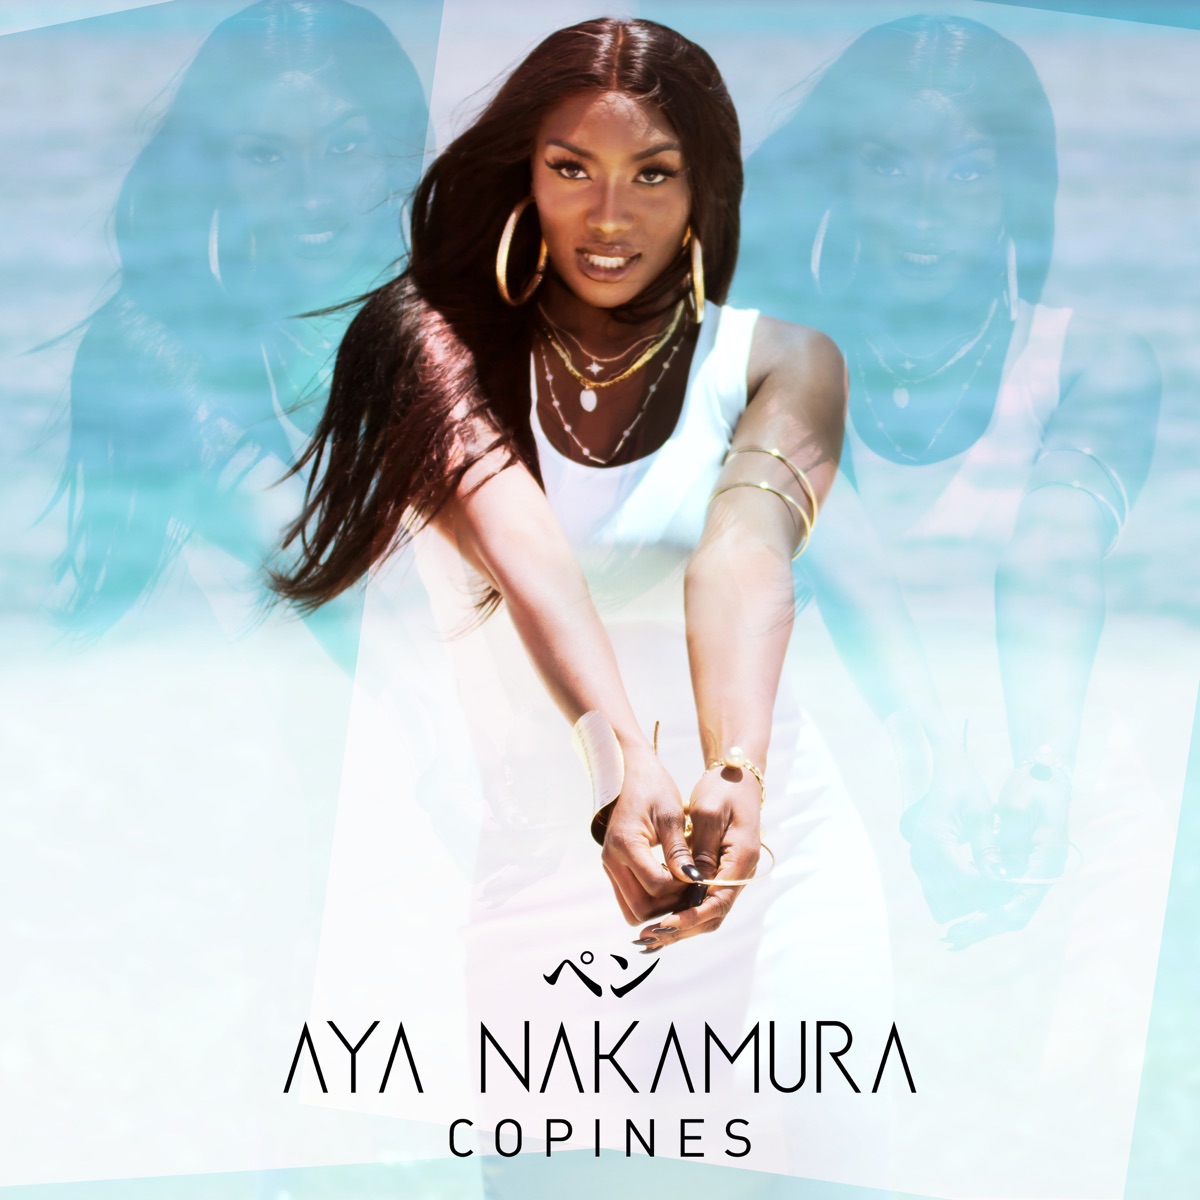 NAKAMURA (Deluxe Edition) - Album by Aya Nakamura - Apple Music